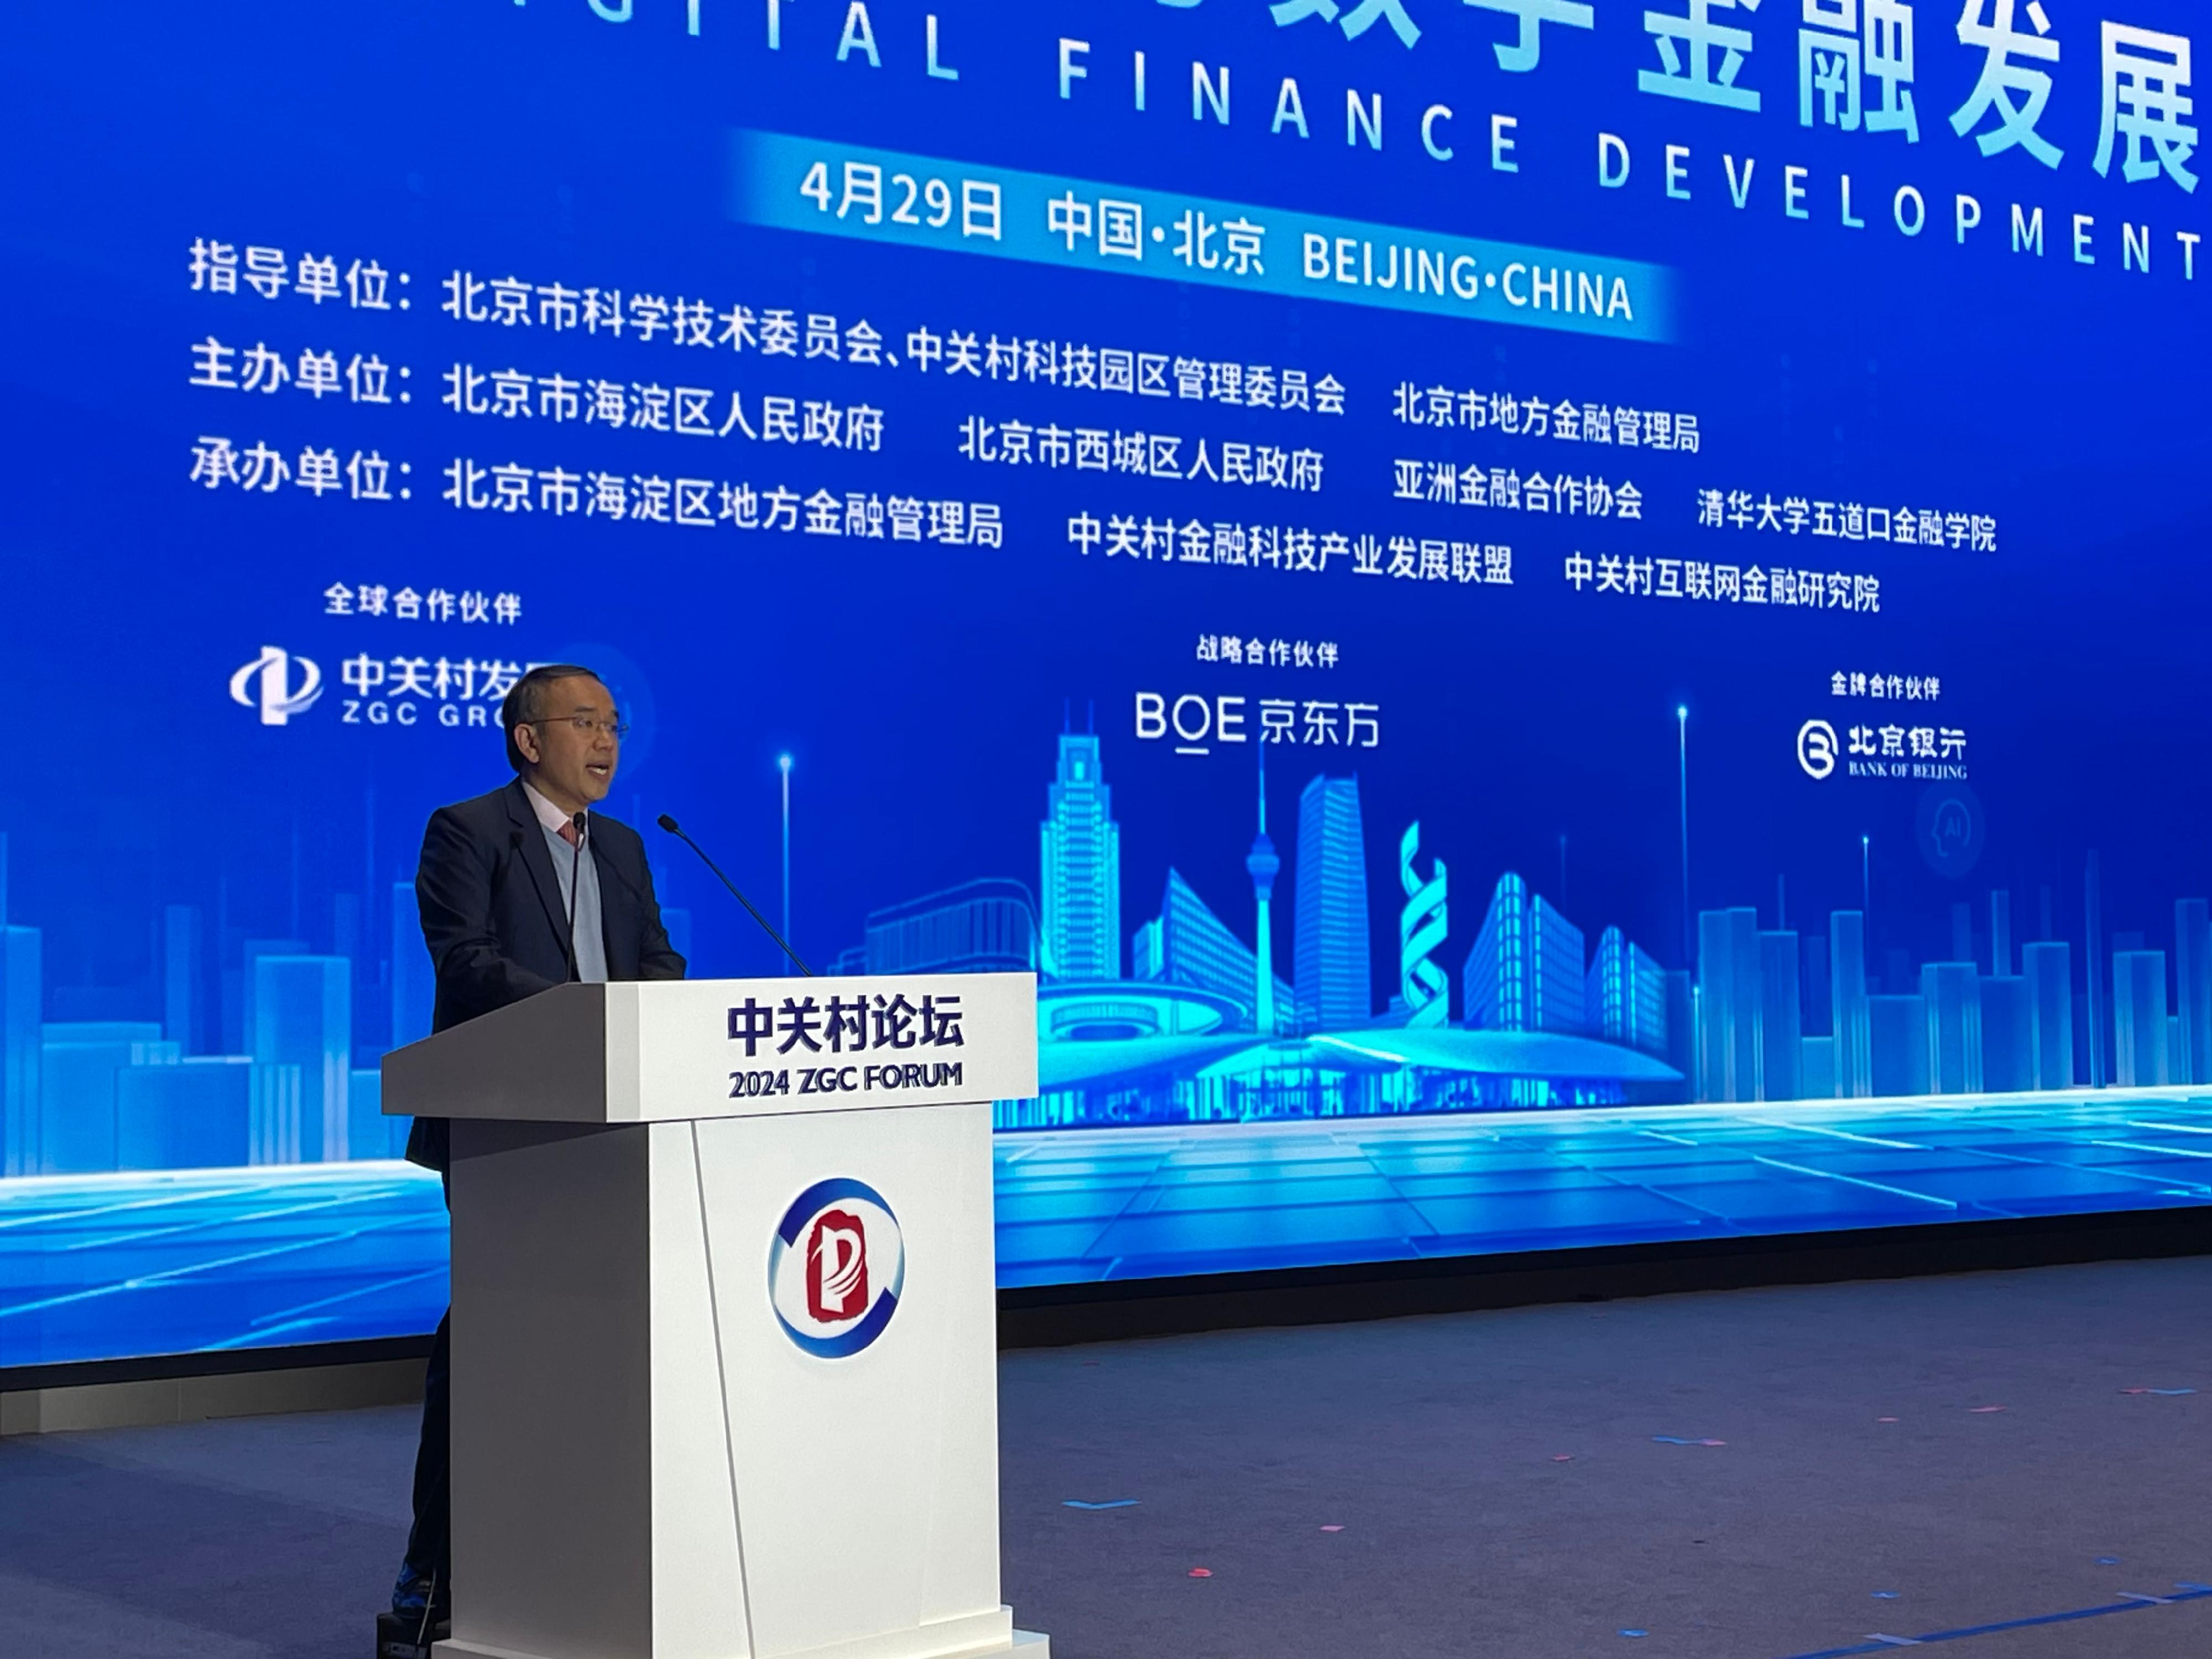 許正宇在平行論壇以「香港金融業界應對人工智能帶來的機遇與挑戰」為題作主旨演講。